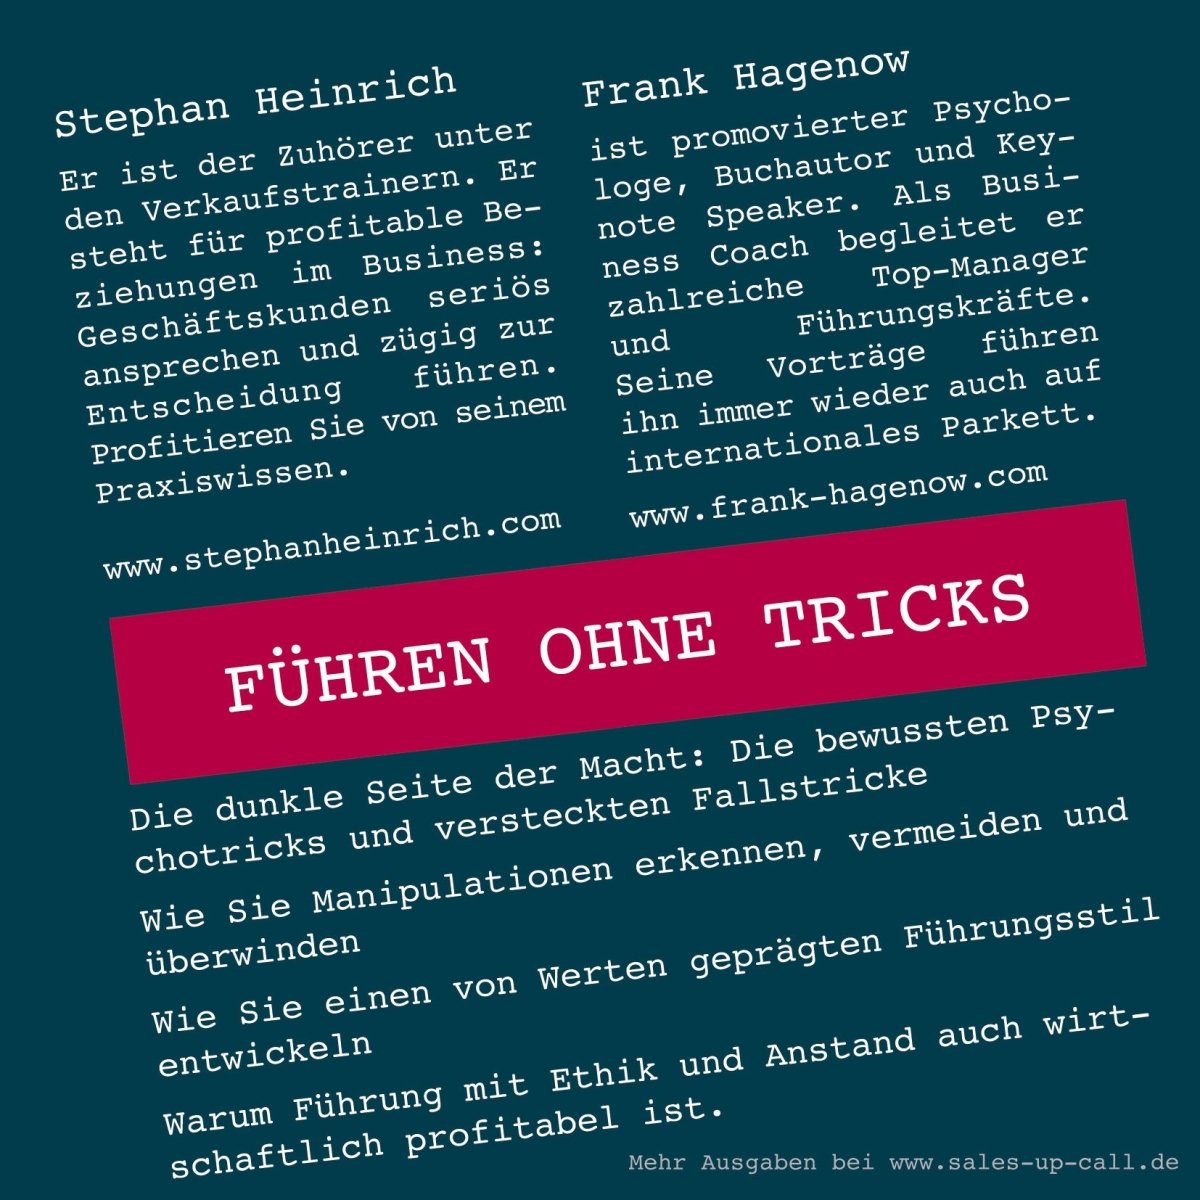 Führen ohne Tricks - Sales-up-Call - Stephan Heinrich